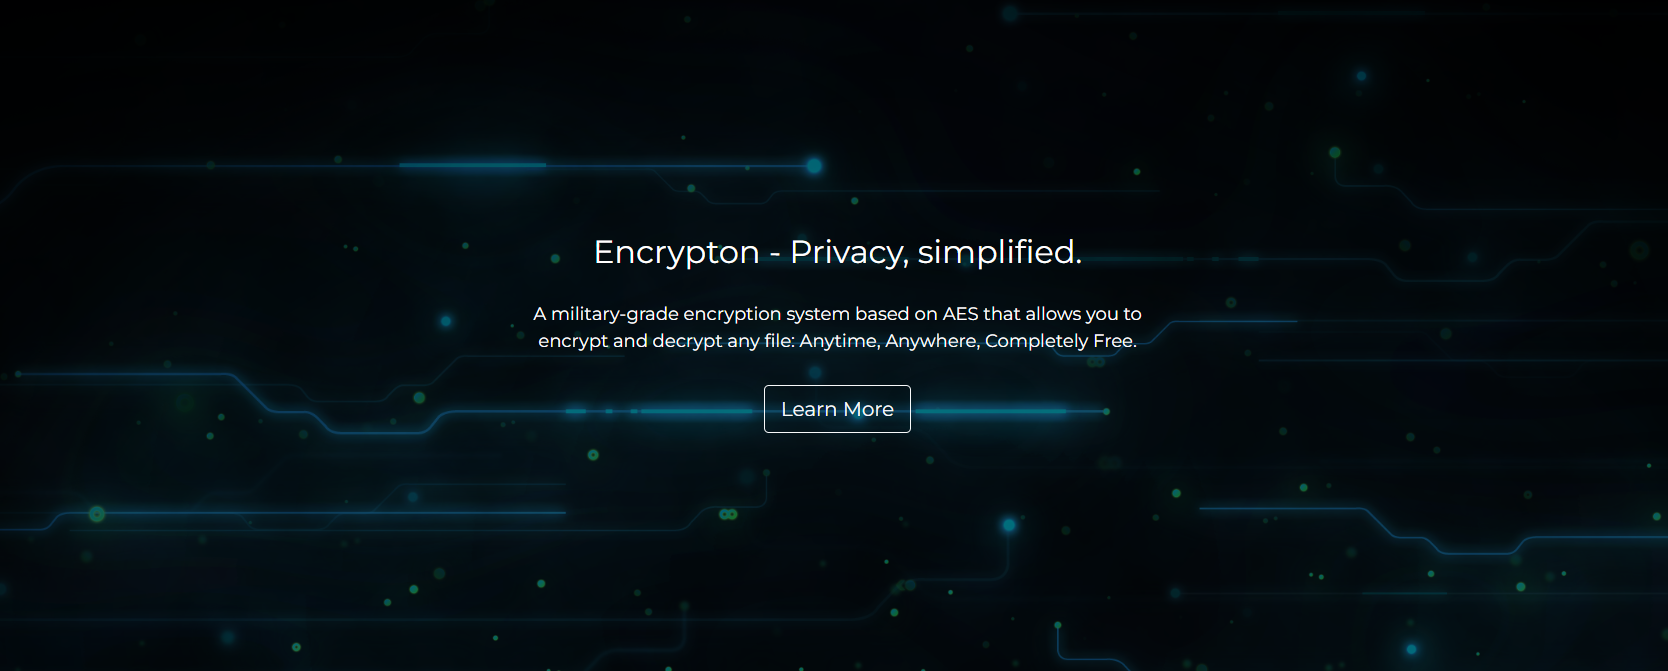 Encrypton - Privacy, simplified.